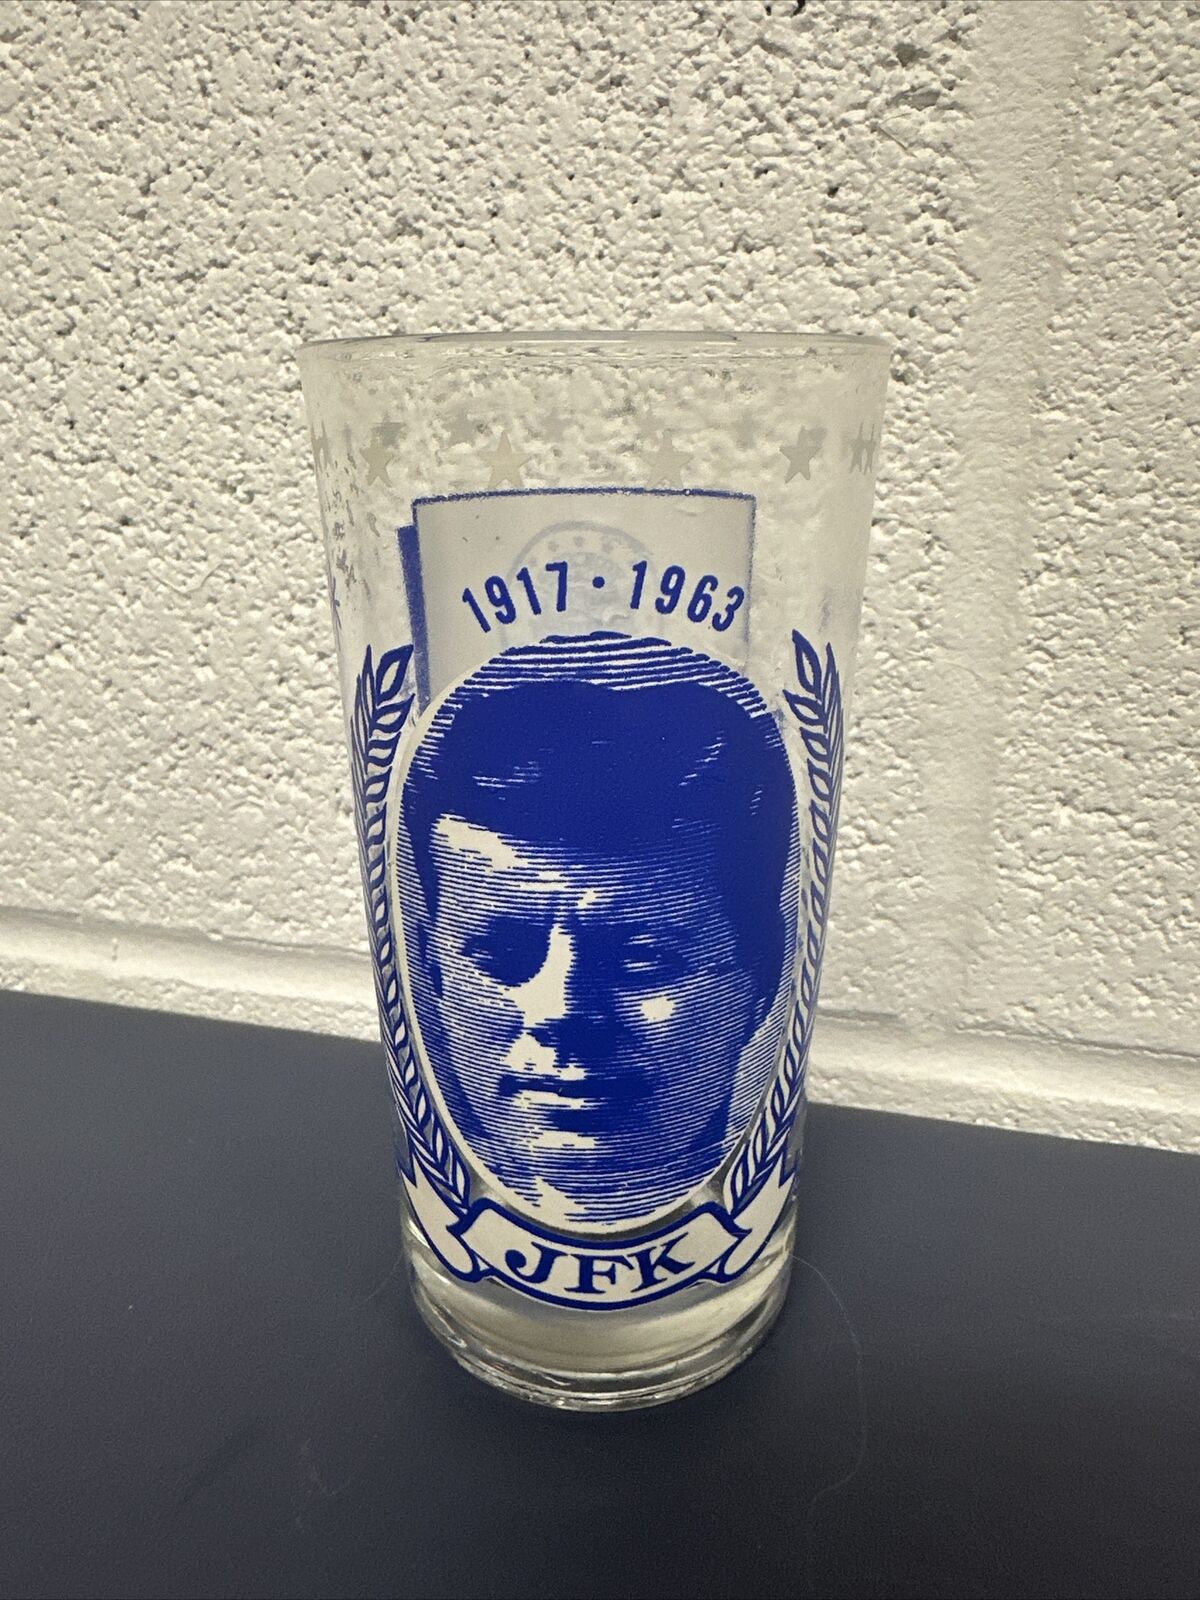 Vintage JFK Memorial glass/tumbler 1917-1963  President John F Kennedy